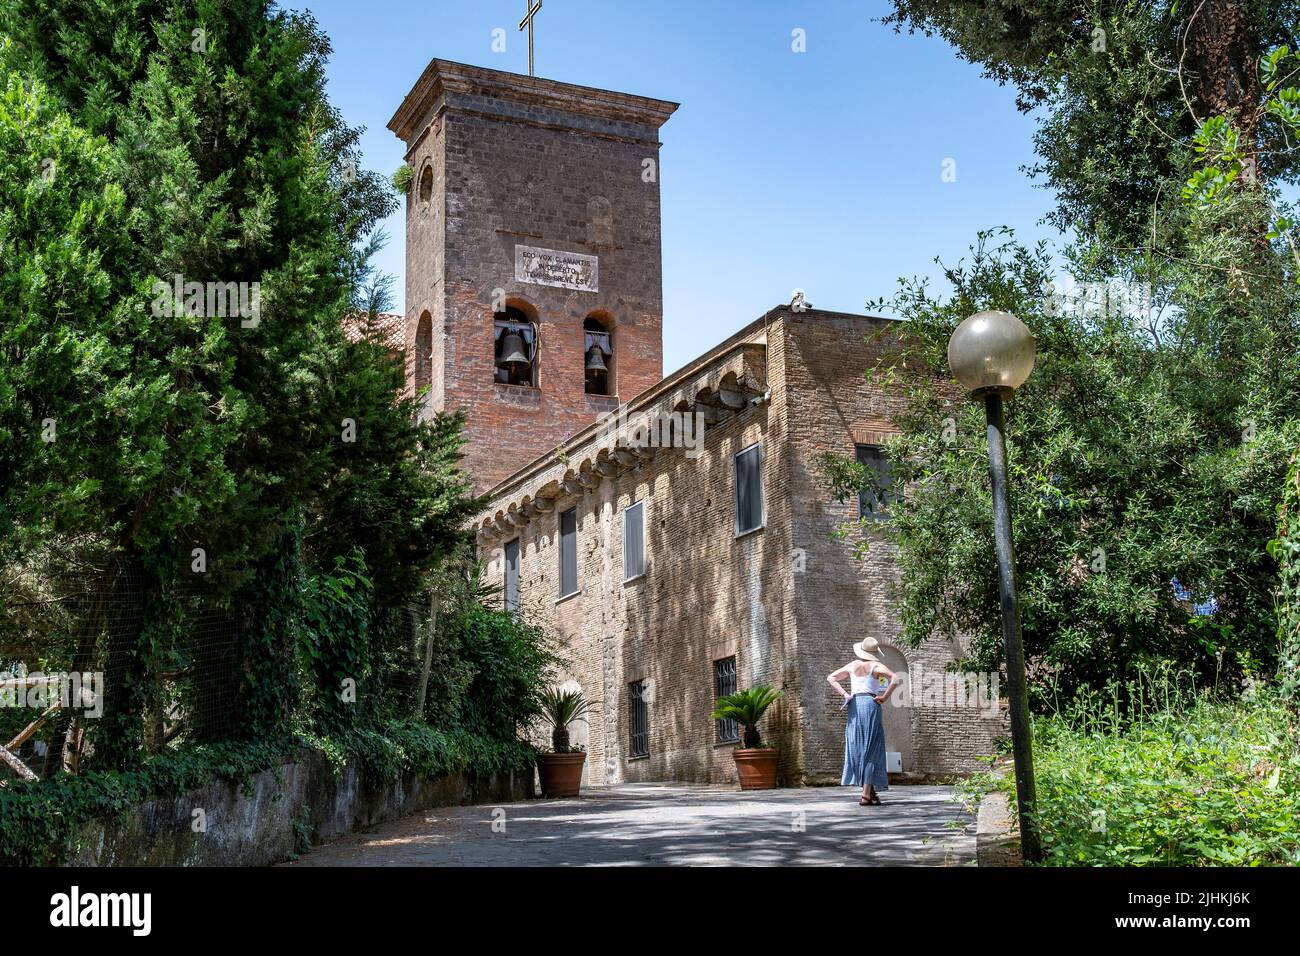 Das Wüstenkloster in Sant'Agata sui due Golfi hat seinen Namen vom Hügel der Wüste, auf dem es von den Karmeliten-Mönchen im 17.. Jahrhundert erbaut wurde Stockfoto